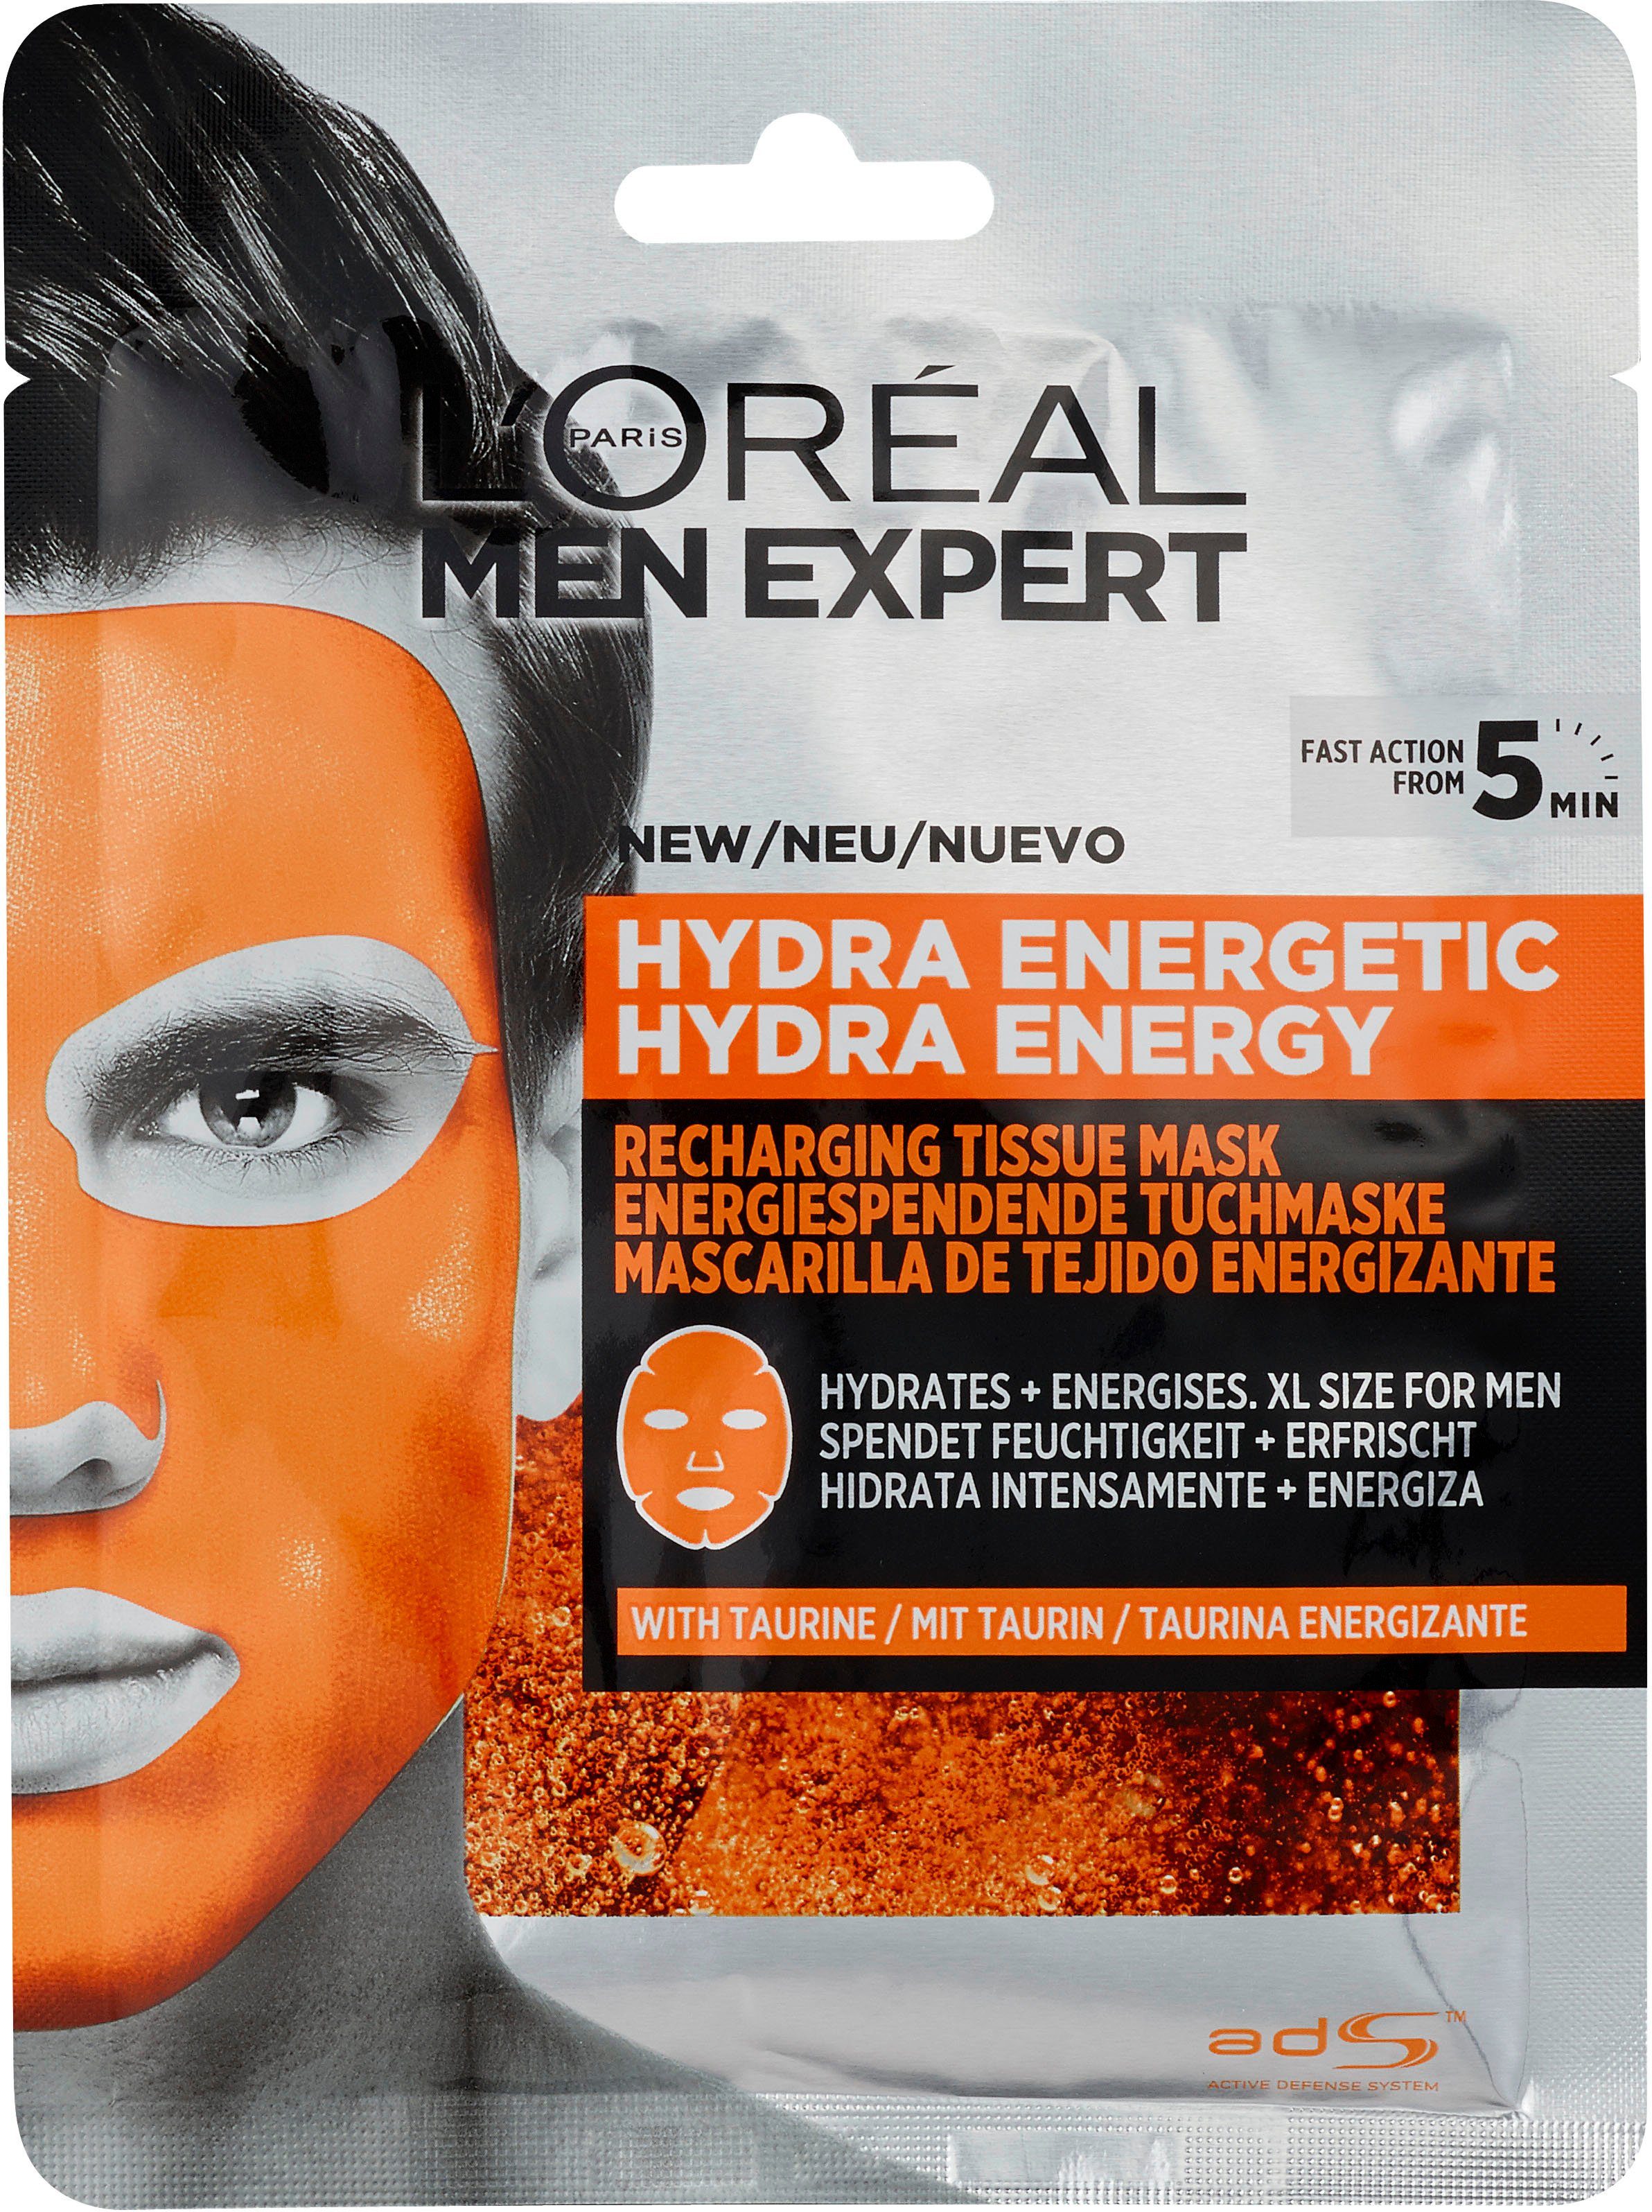 L'ORÉAL PARIS MEN EXPERT Hydra Energy Gesichtsmasken-Set 4-tlg. Set, Pure Charcoal und